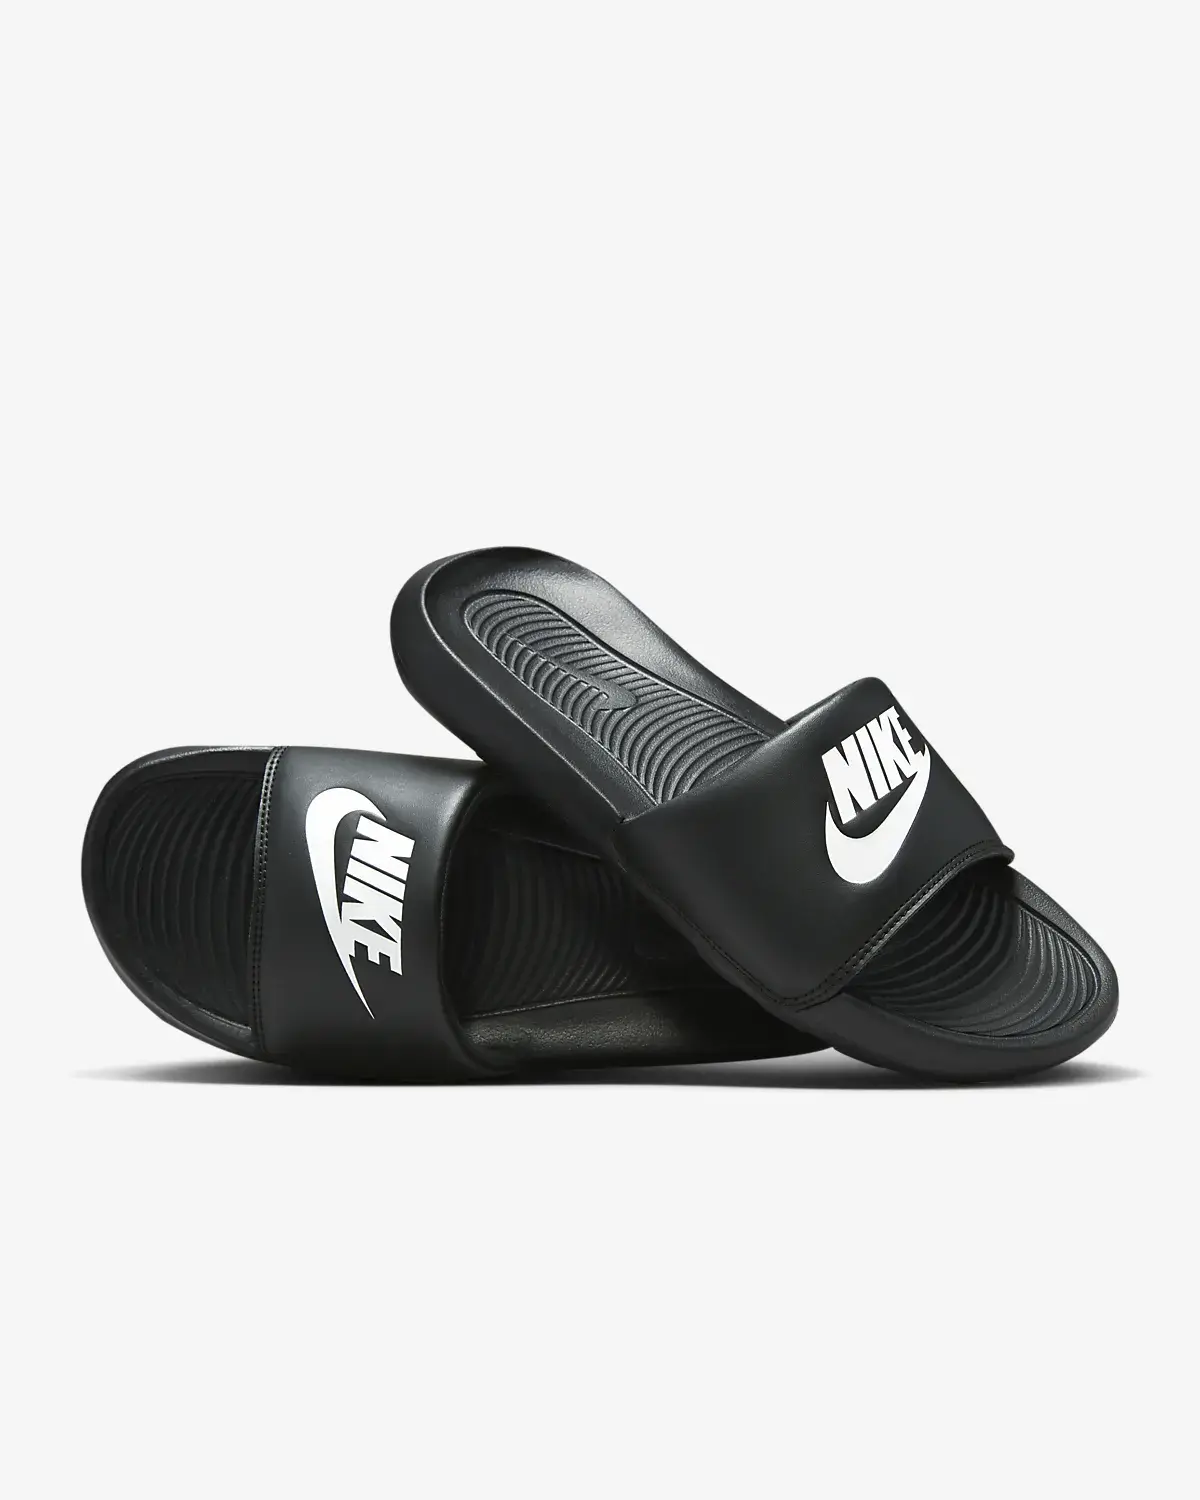 Nike Victori One. 1